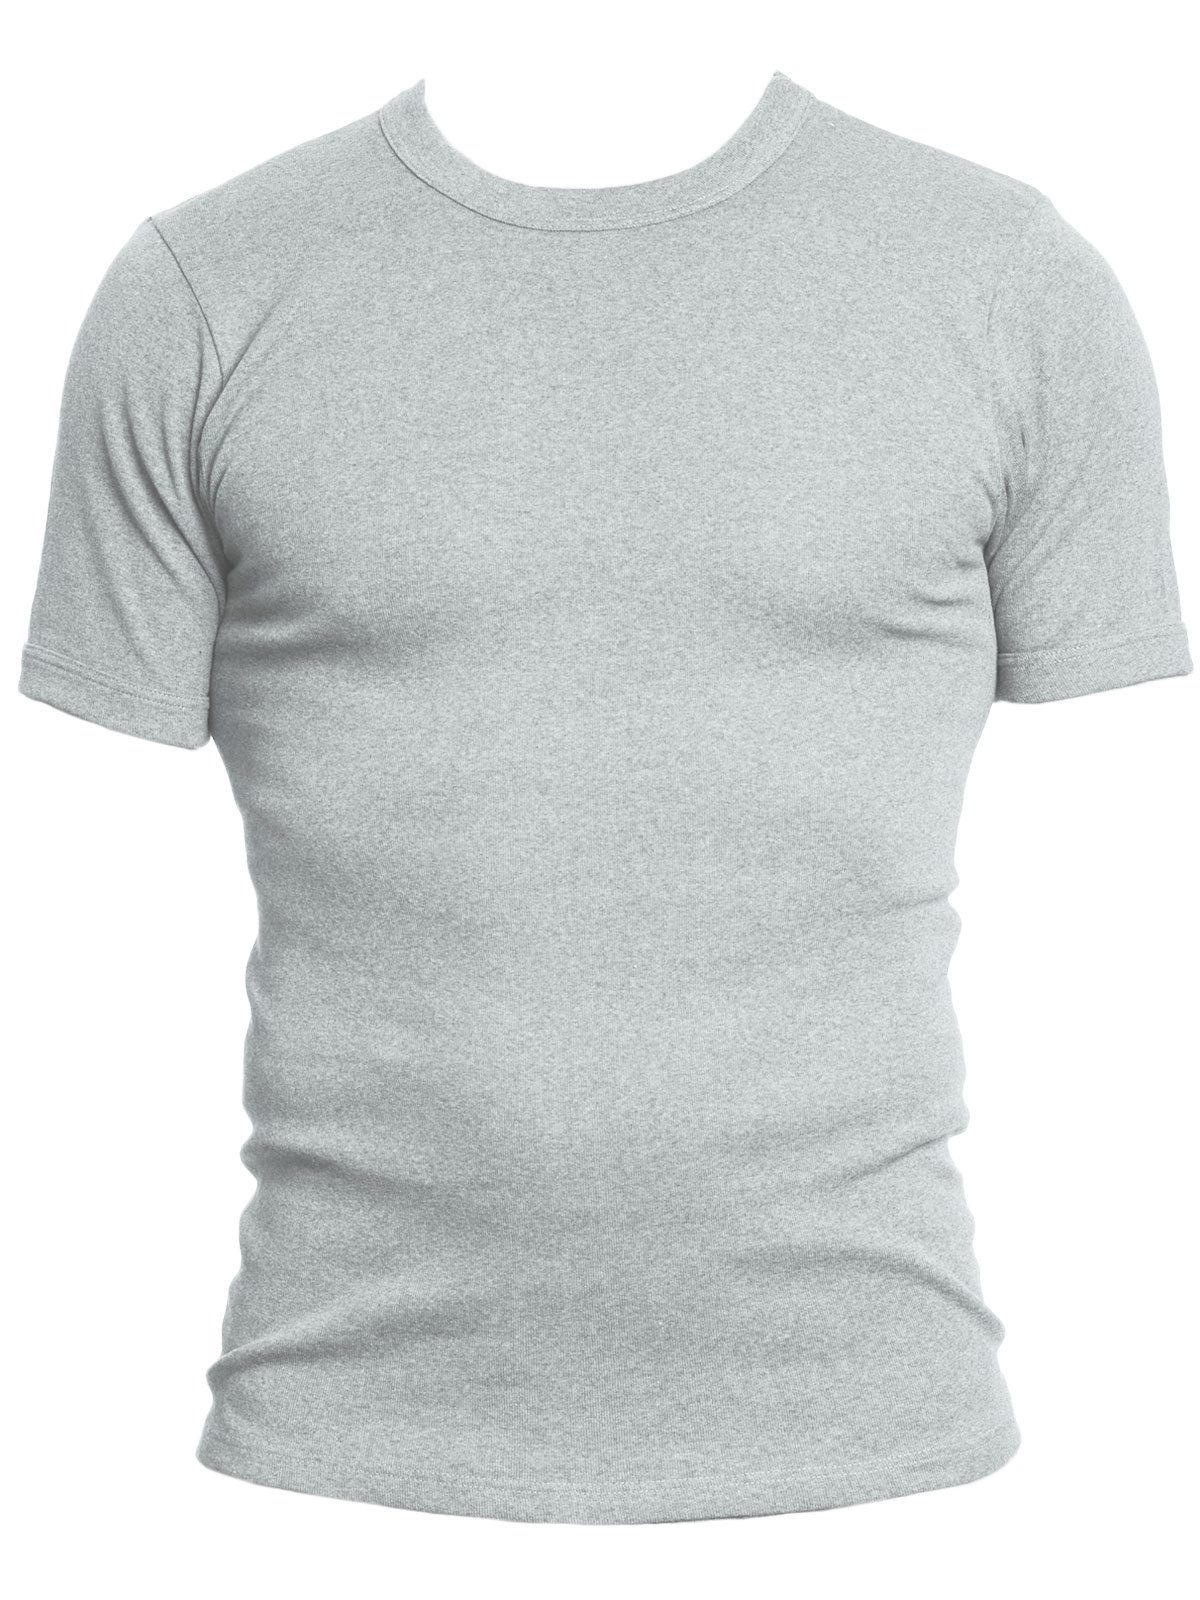 KUMPF Unterziehshirt 2er Sparpack hohe kiesel-melange T-Shirt Markenqualität blau-melange 2-St) Workerwear Herren (Spar-Set